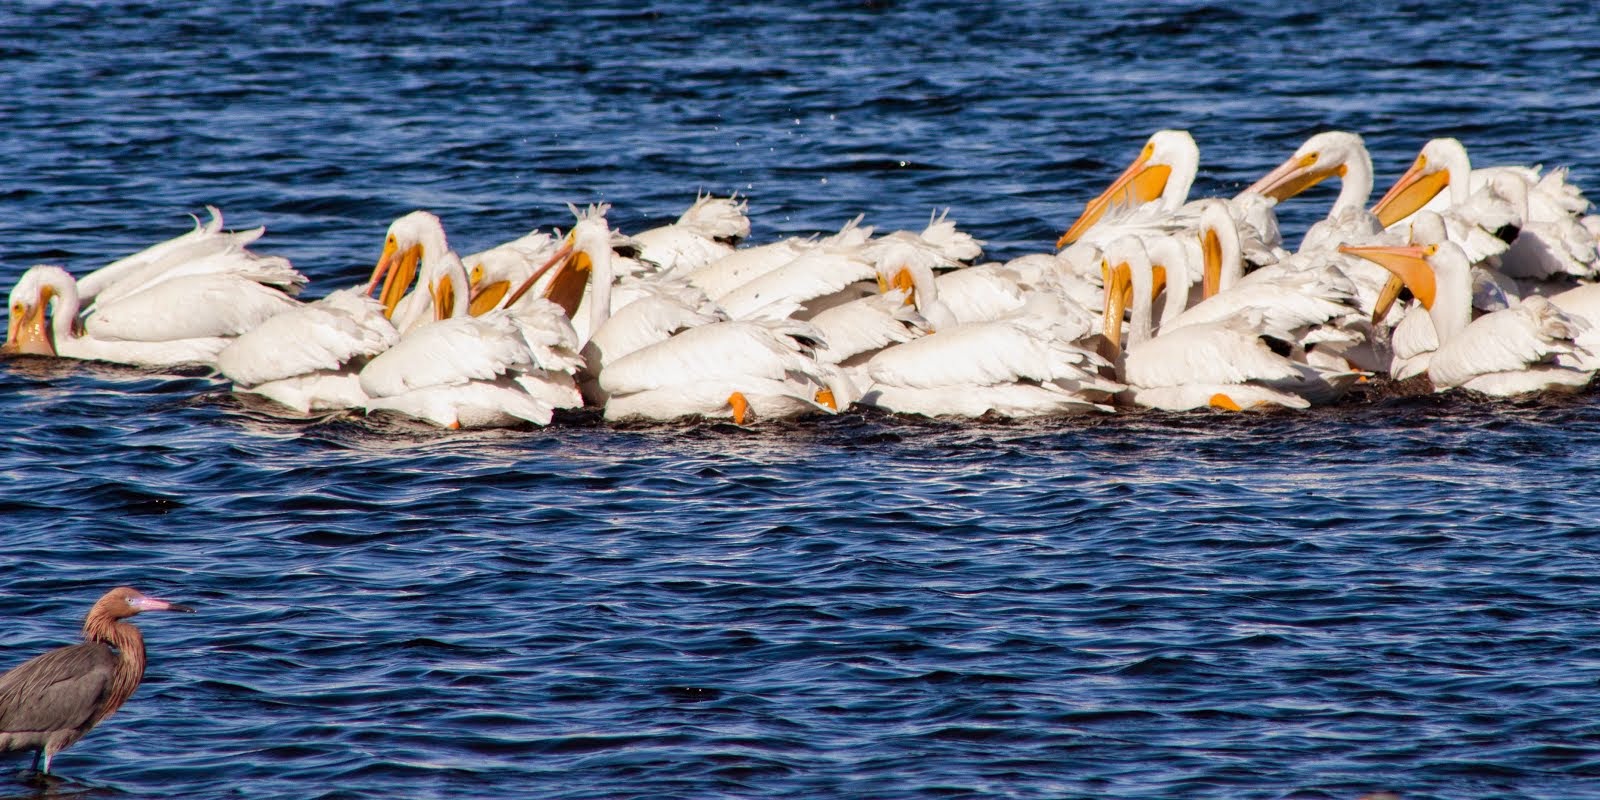 White Pelicans photo-bombed